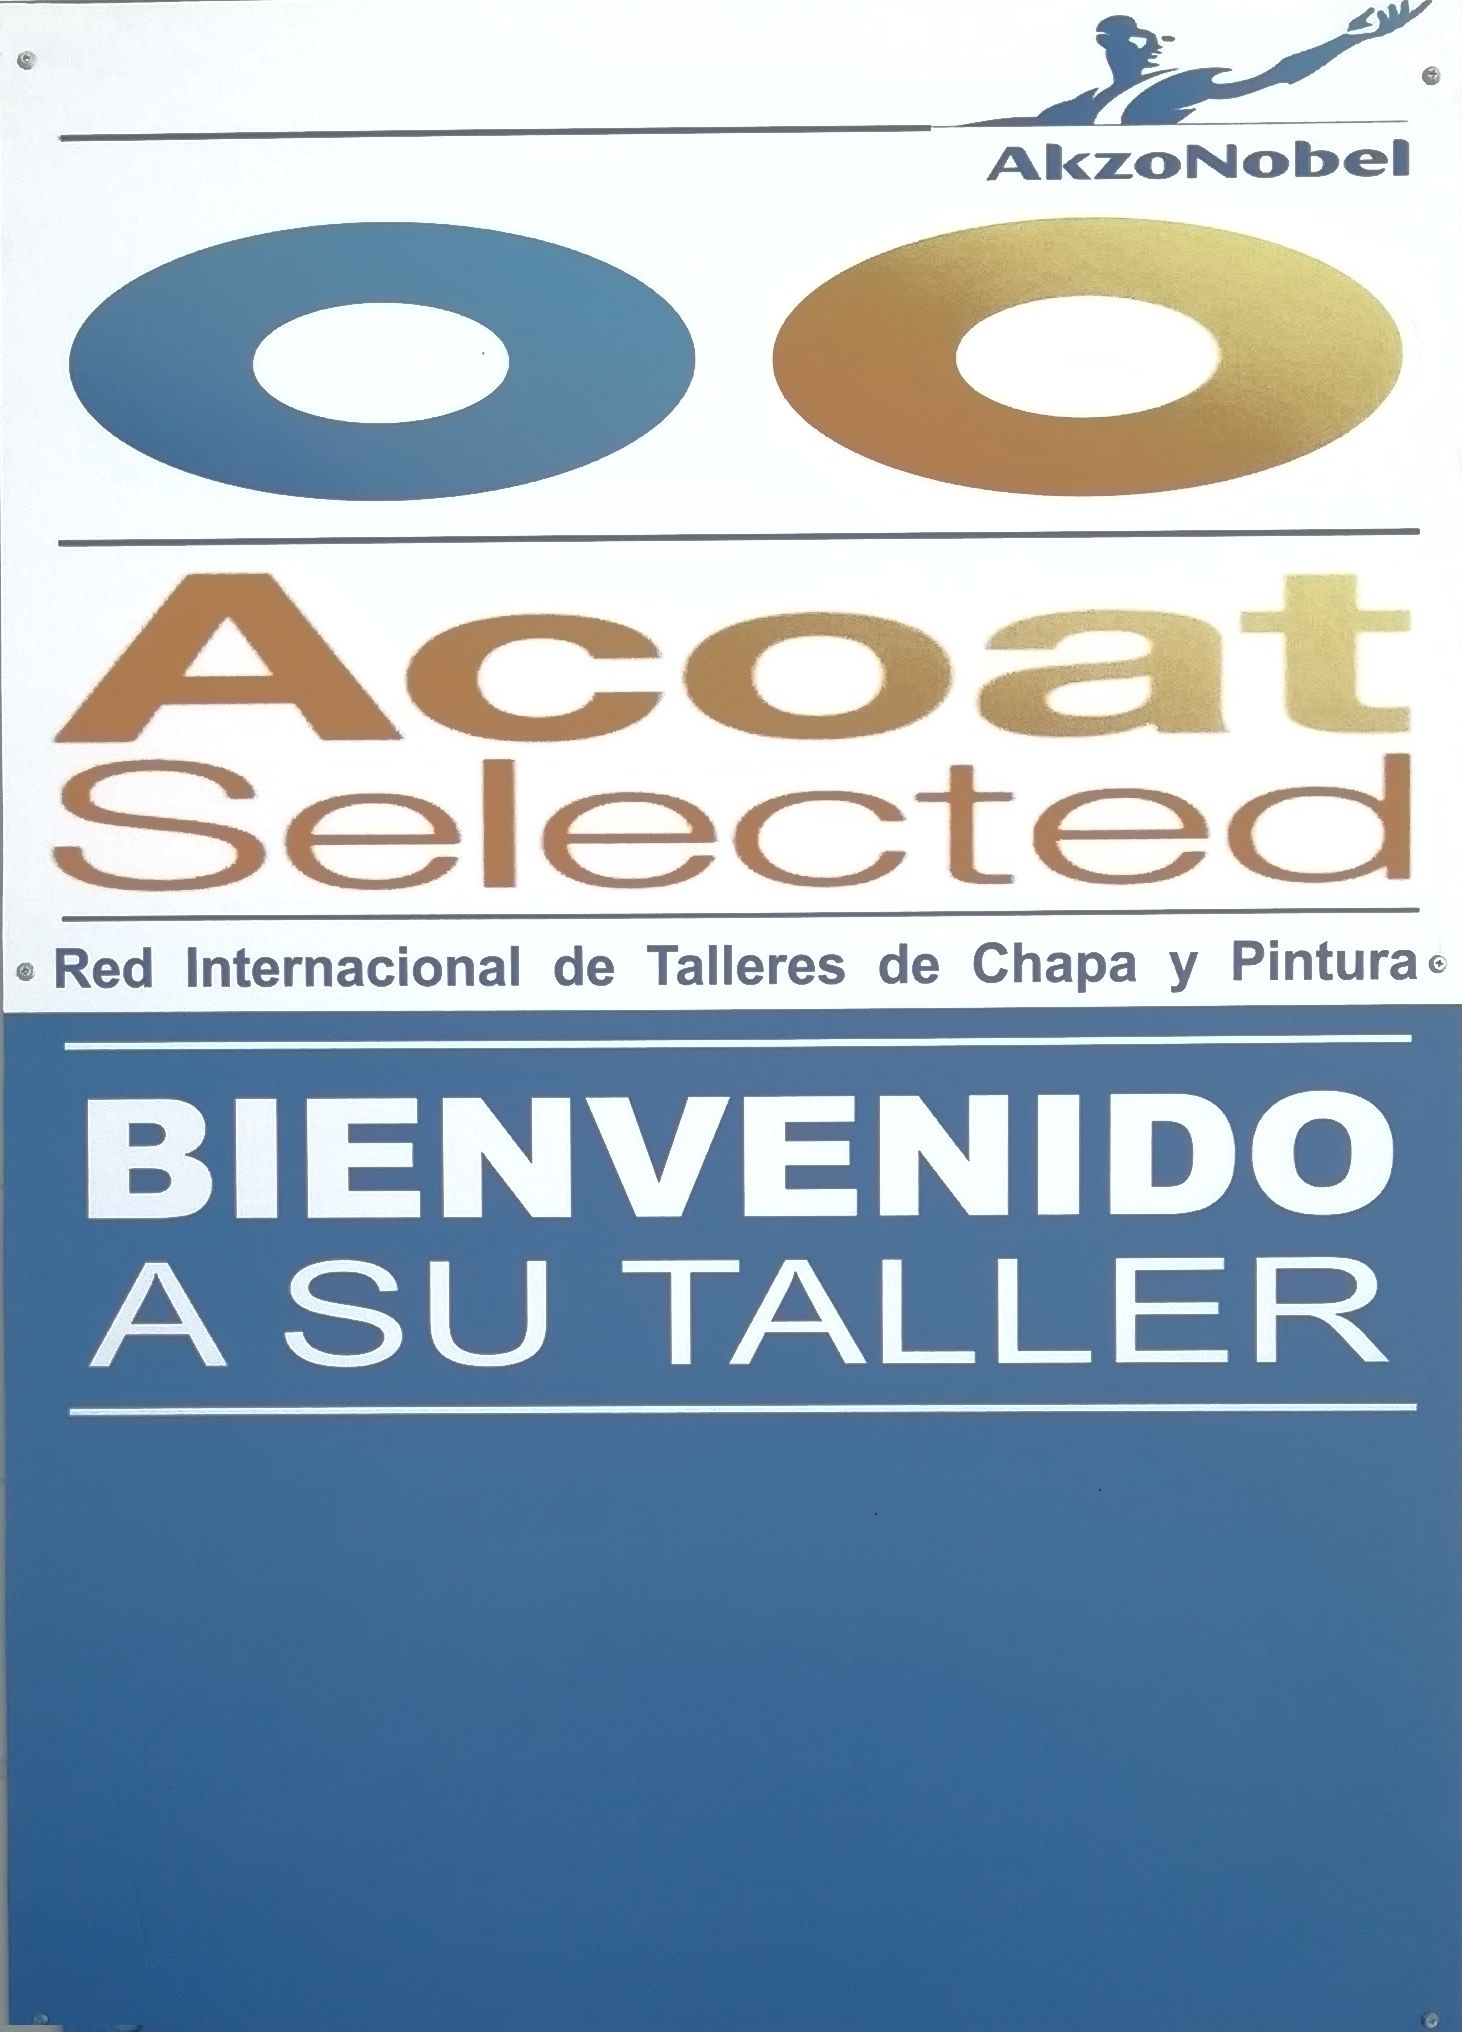 Taller perteneciente a la red de talleres Acoat Selected